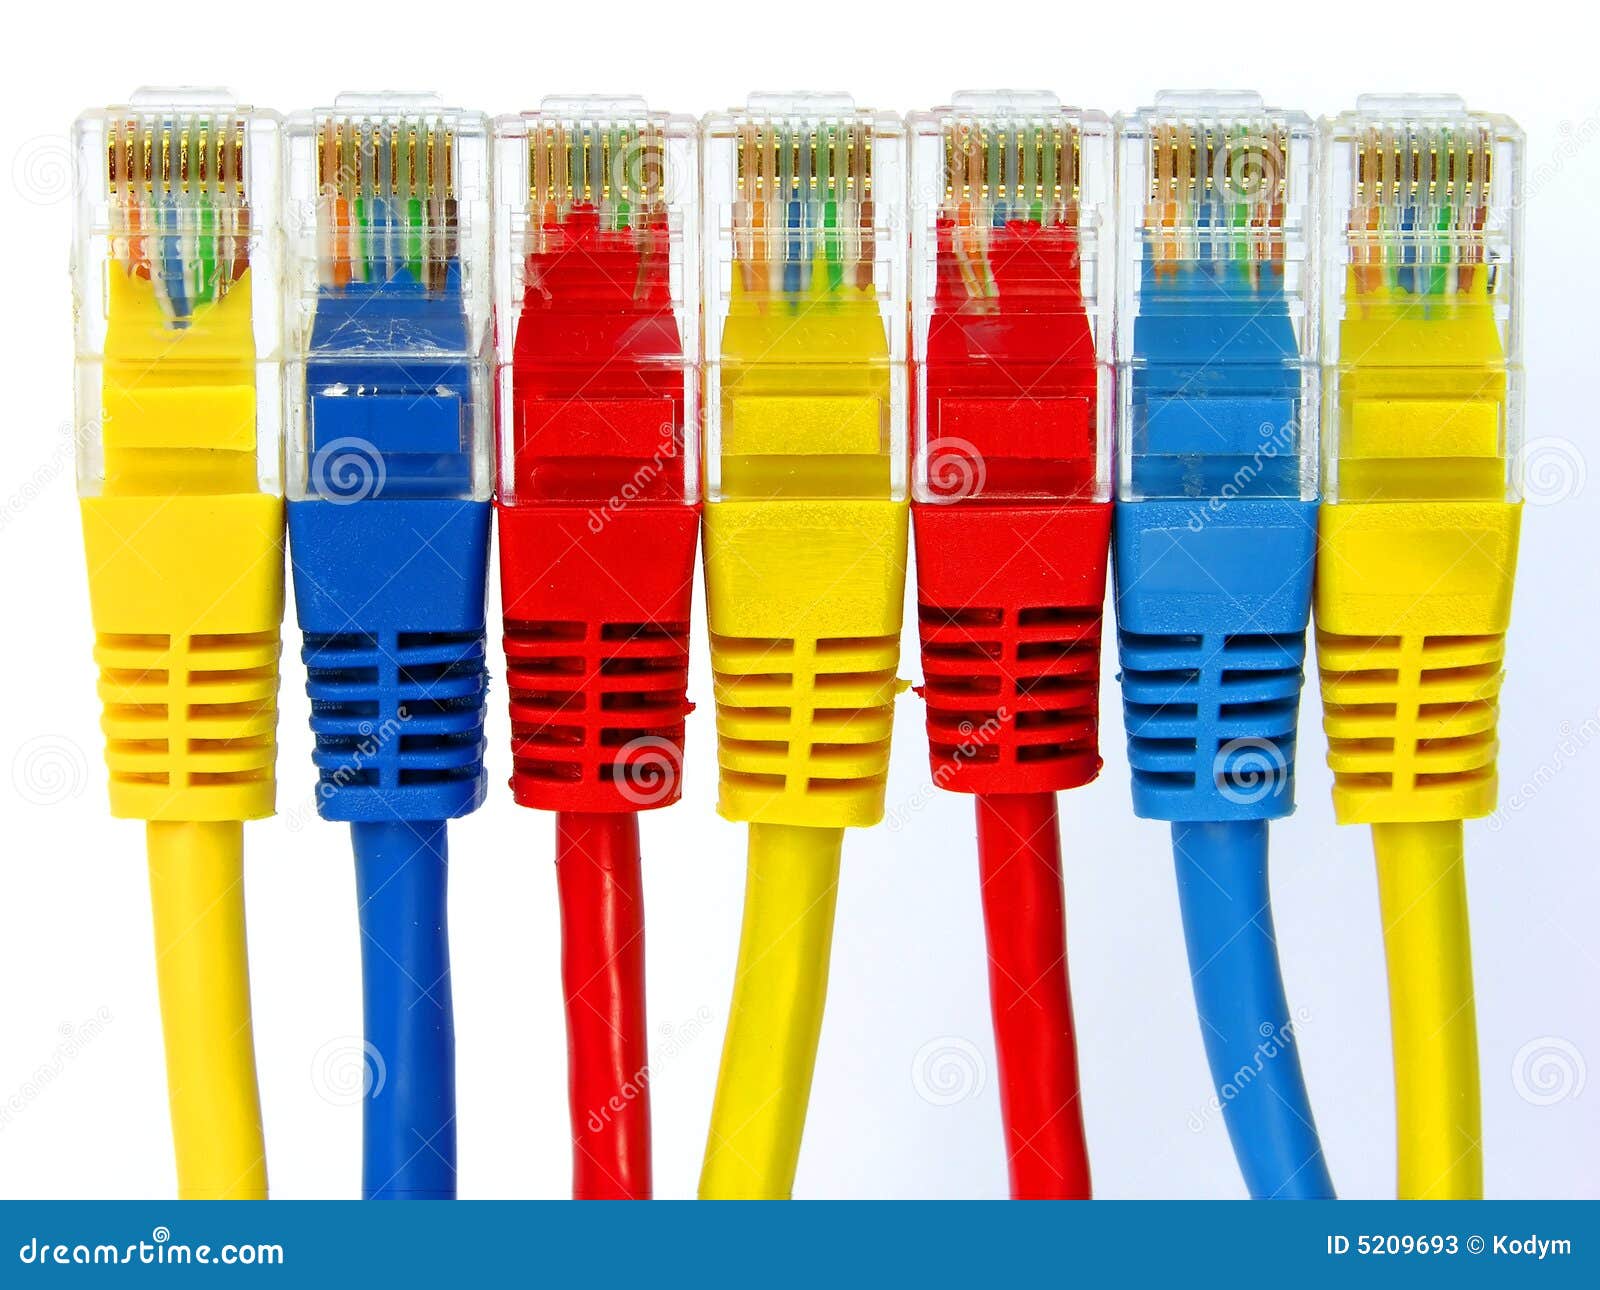 group of color connectors rj45